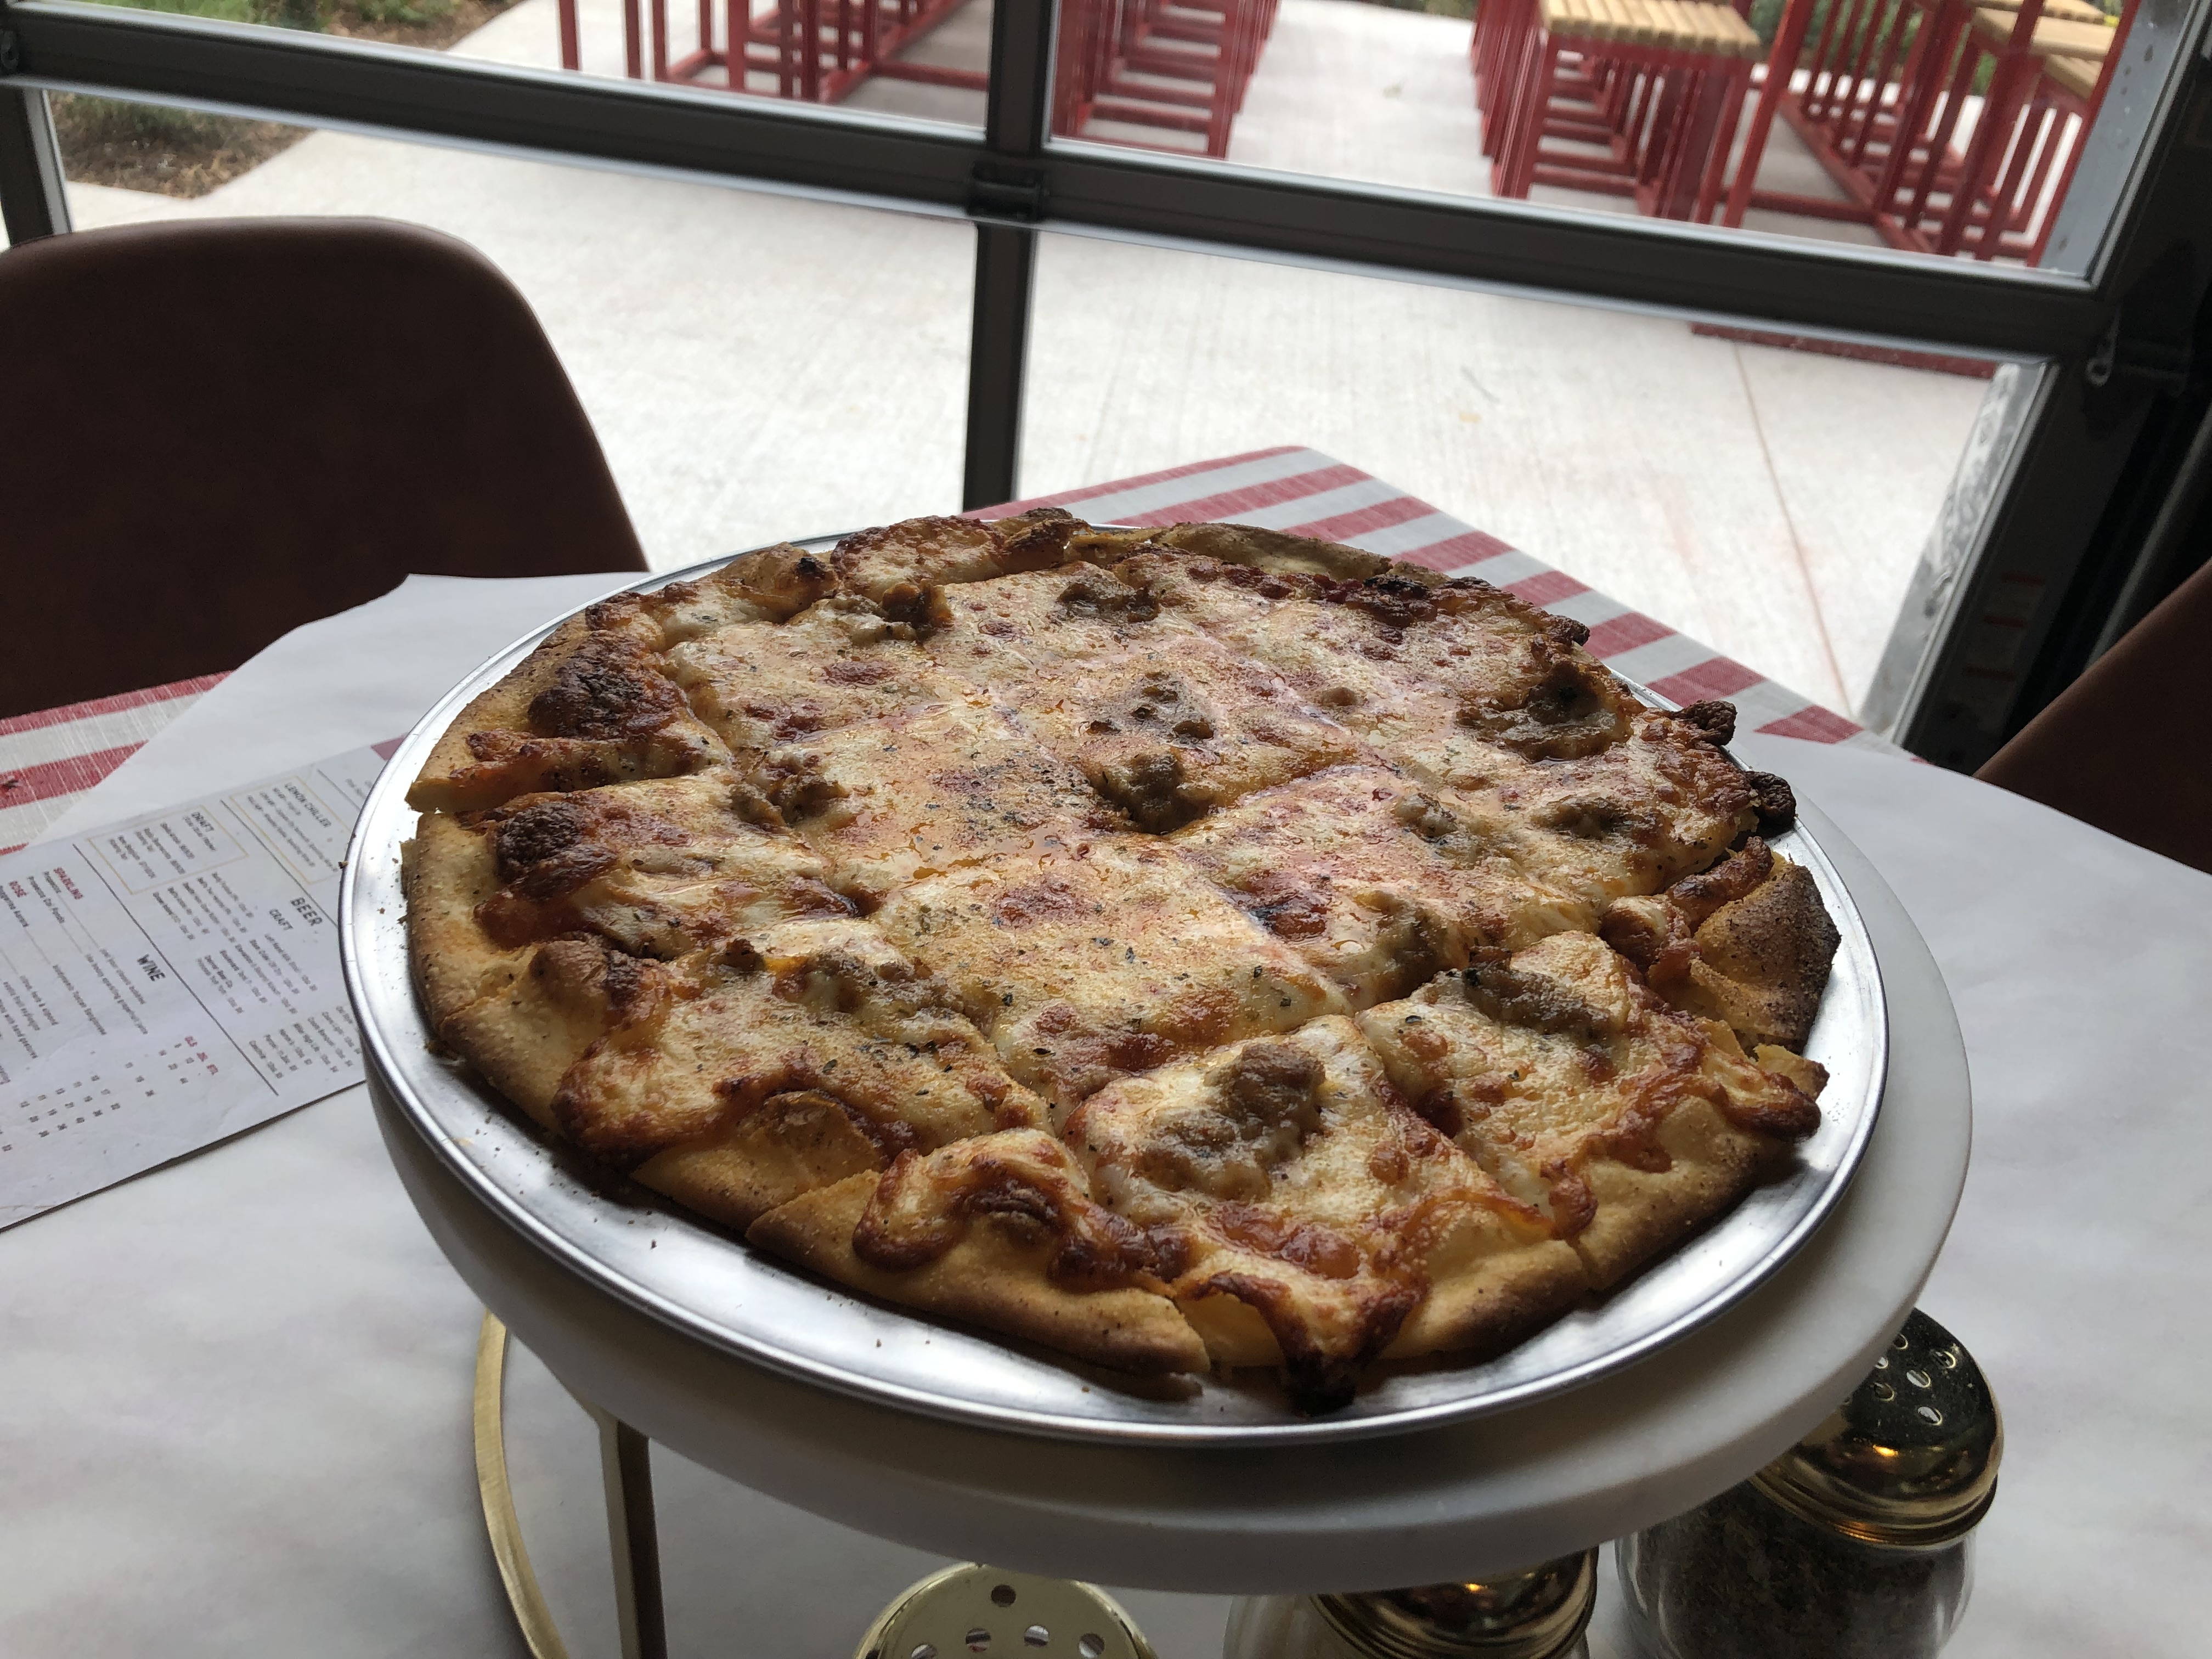 Grabowski’s Chicago Classic pizza